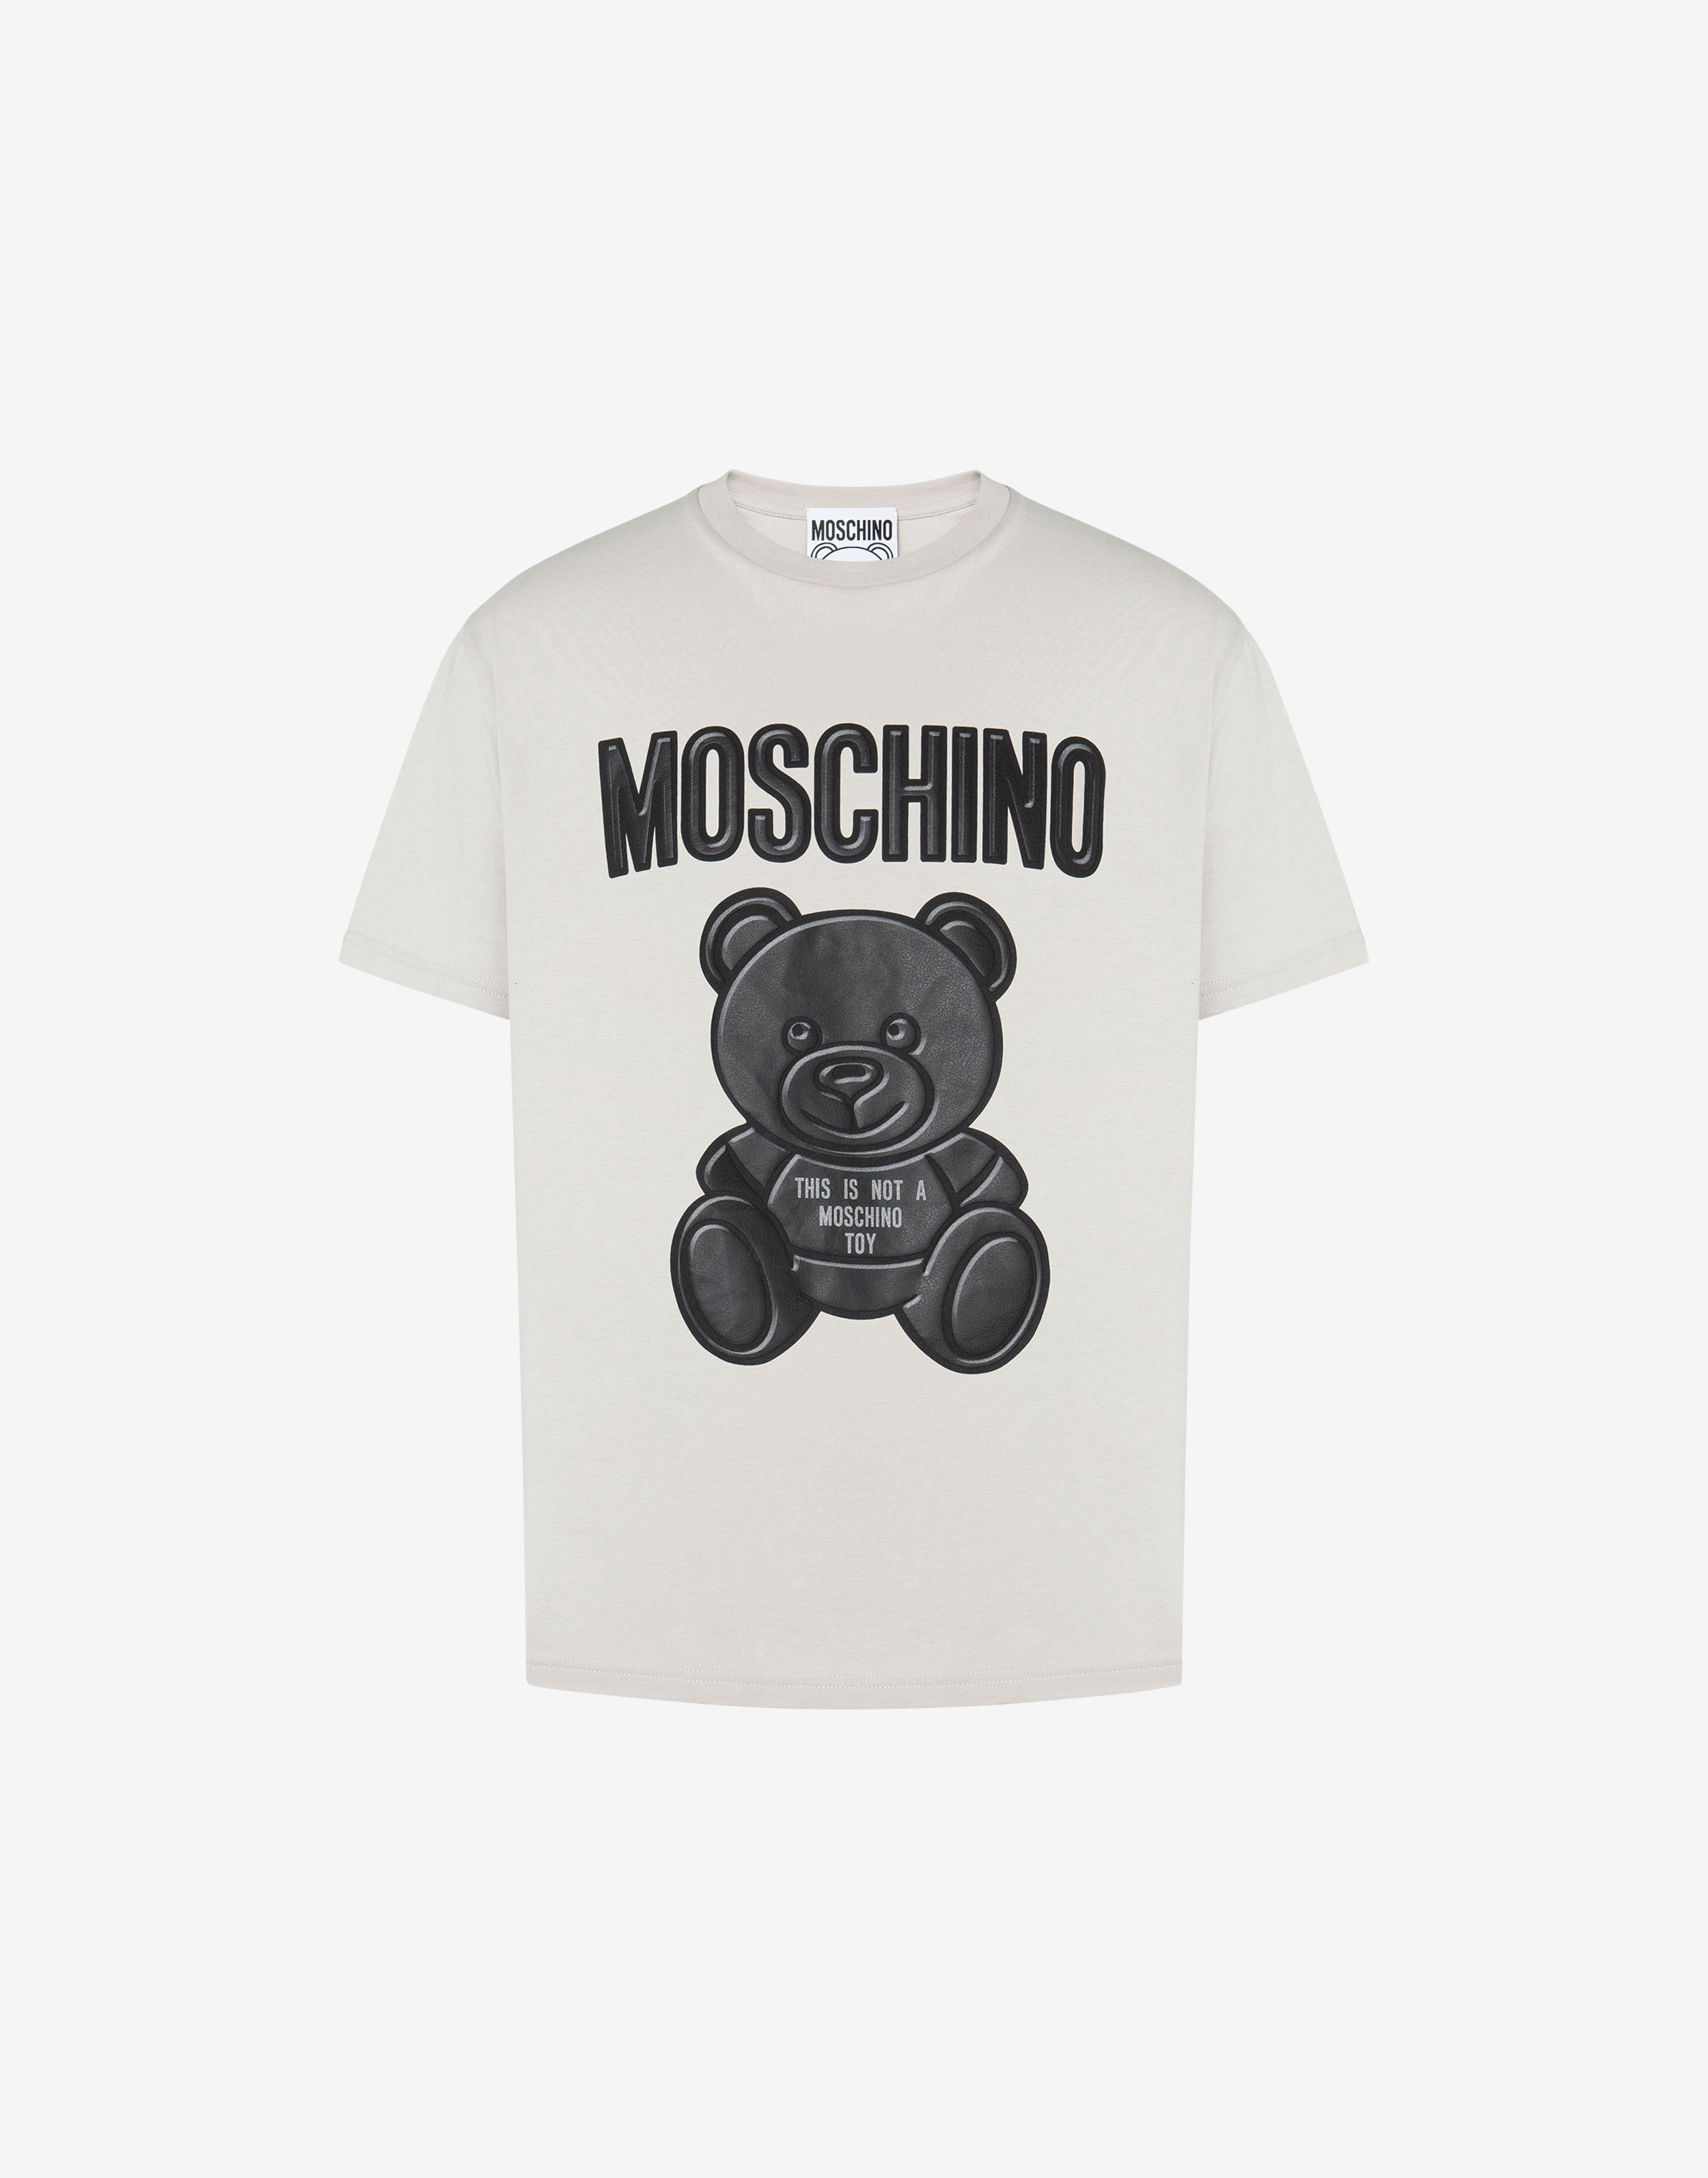 MOSCHINO(モスキーノ) Tシャツ